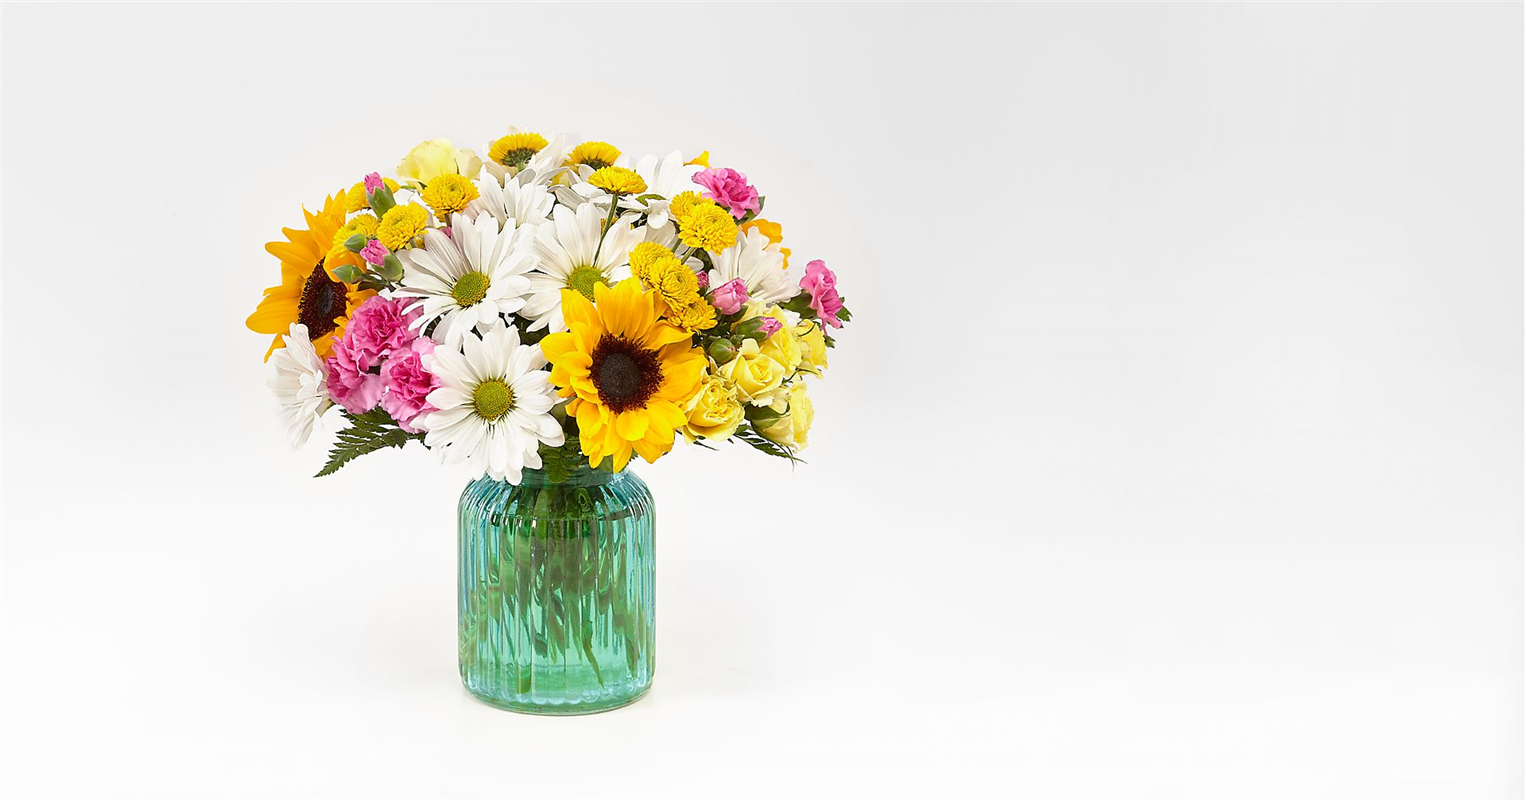 Sunlit Meadows Bouquet - Premium Flower Bouquet